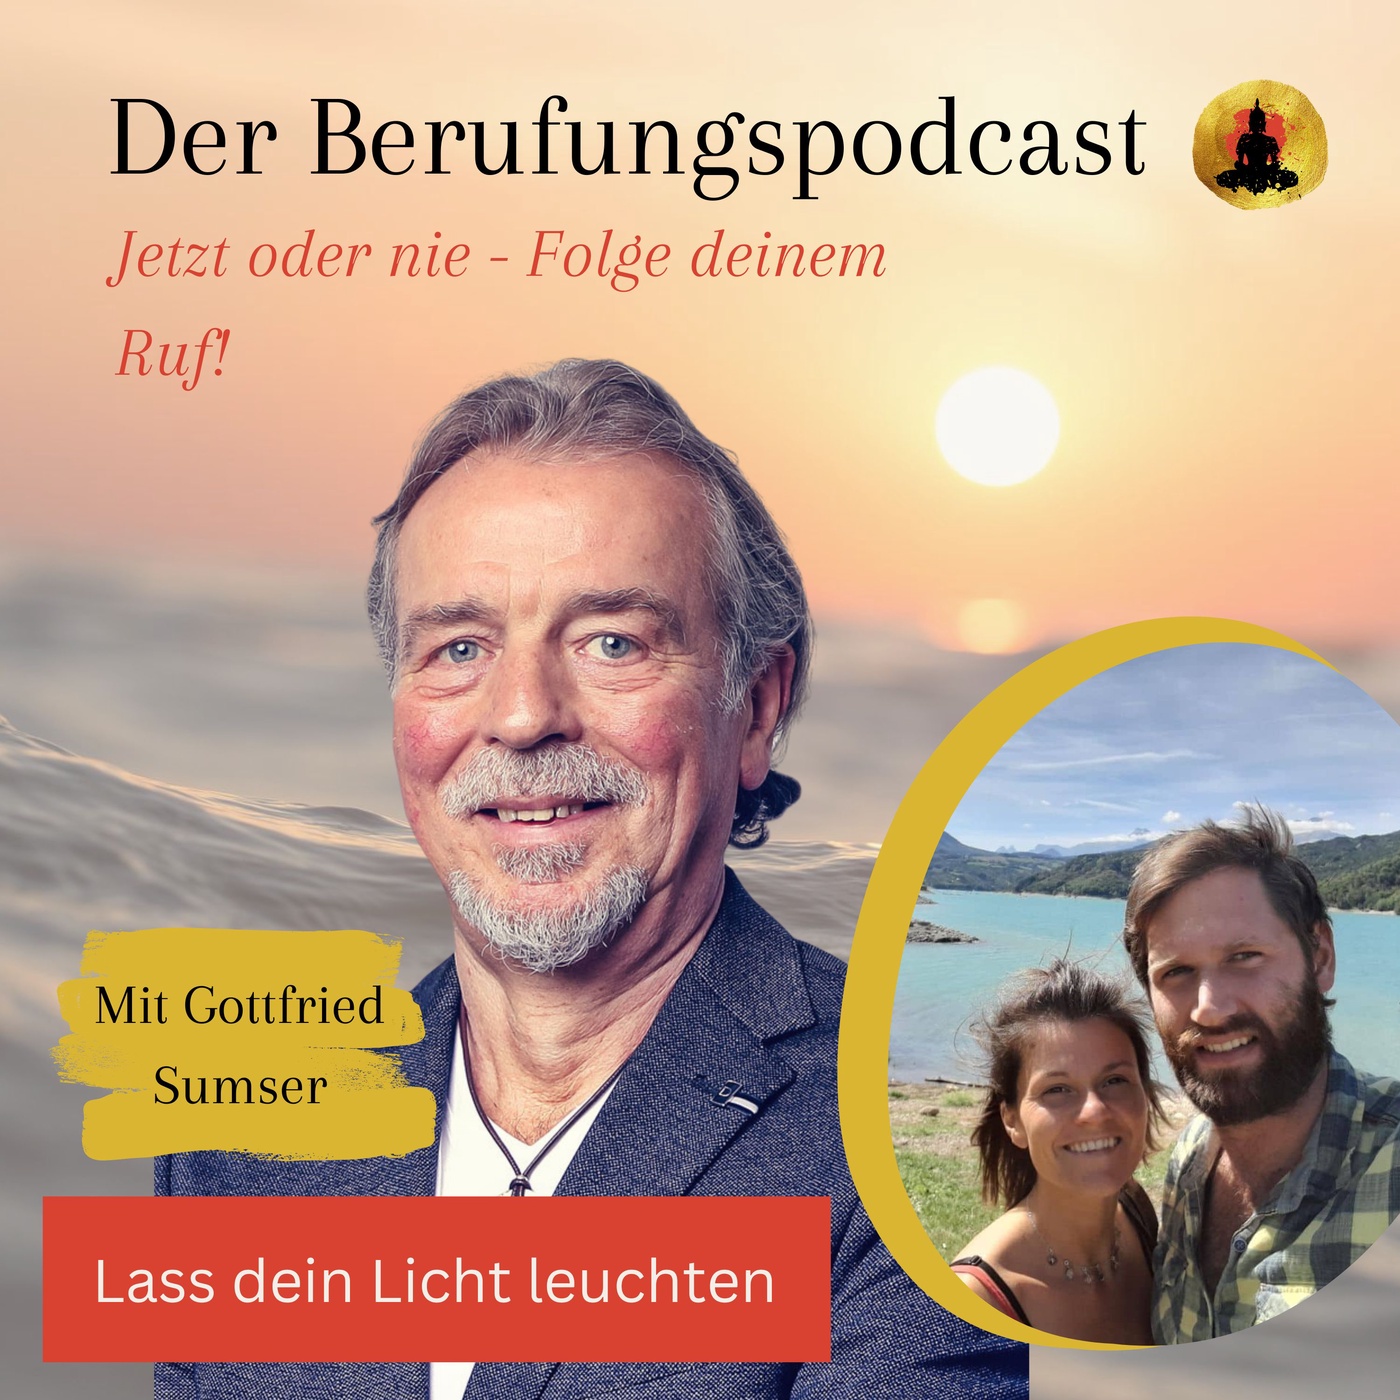 Lass dein Licht leuchten - Im Gespräch mit Gottfried Sumser